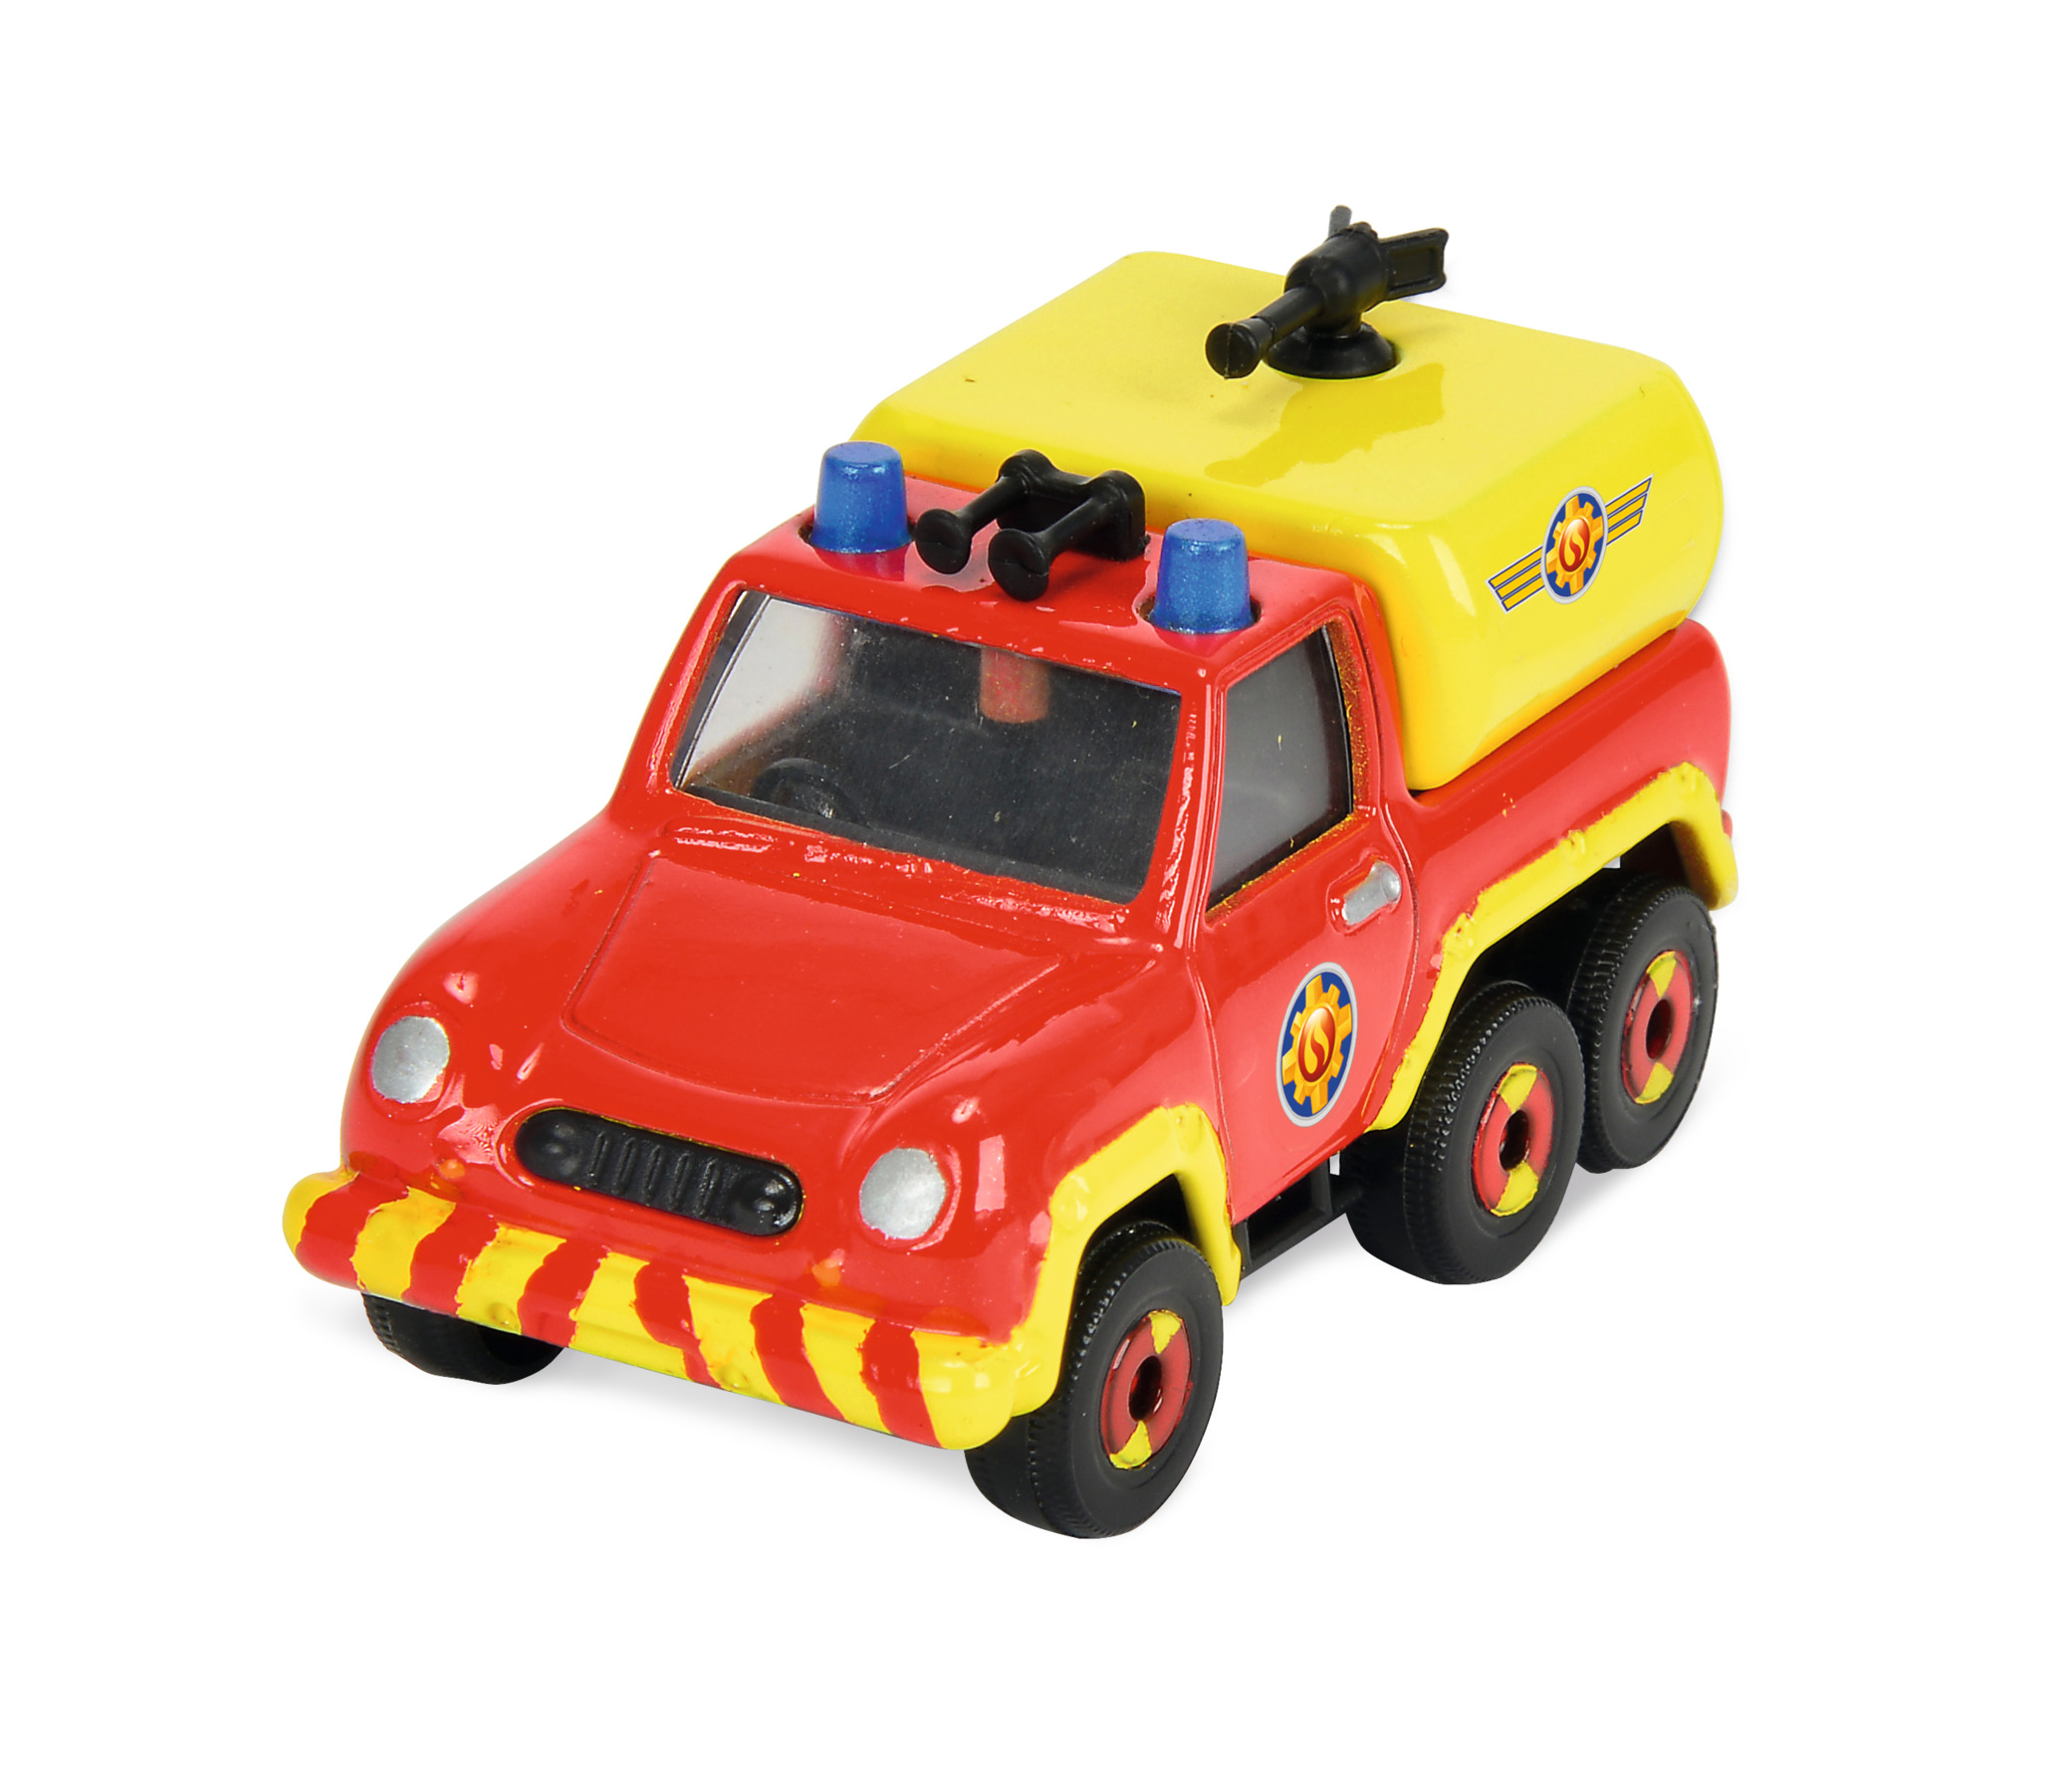 Купить игрушку пожарный. Машинка Dickie Toys пожарный Сэм (3093000) 1:64. Набор машин Dickie Toys пожарный Сэм (3099629) 11 см. Пожарный Сэм игрушки пожарная машина.